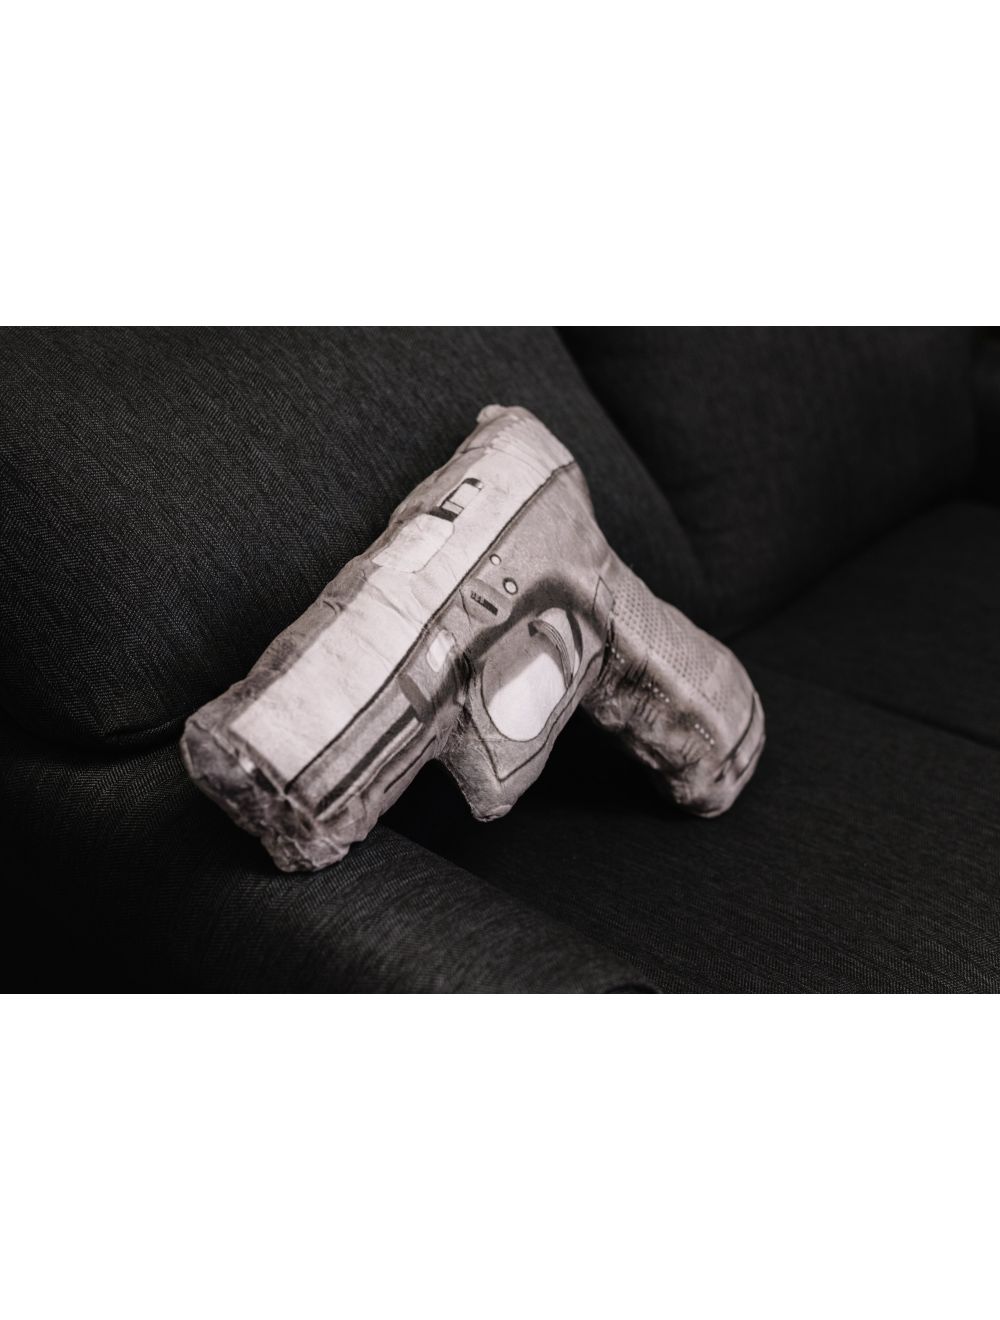 Automatic Handgun Pillow